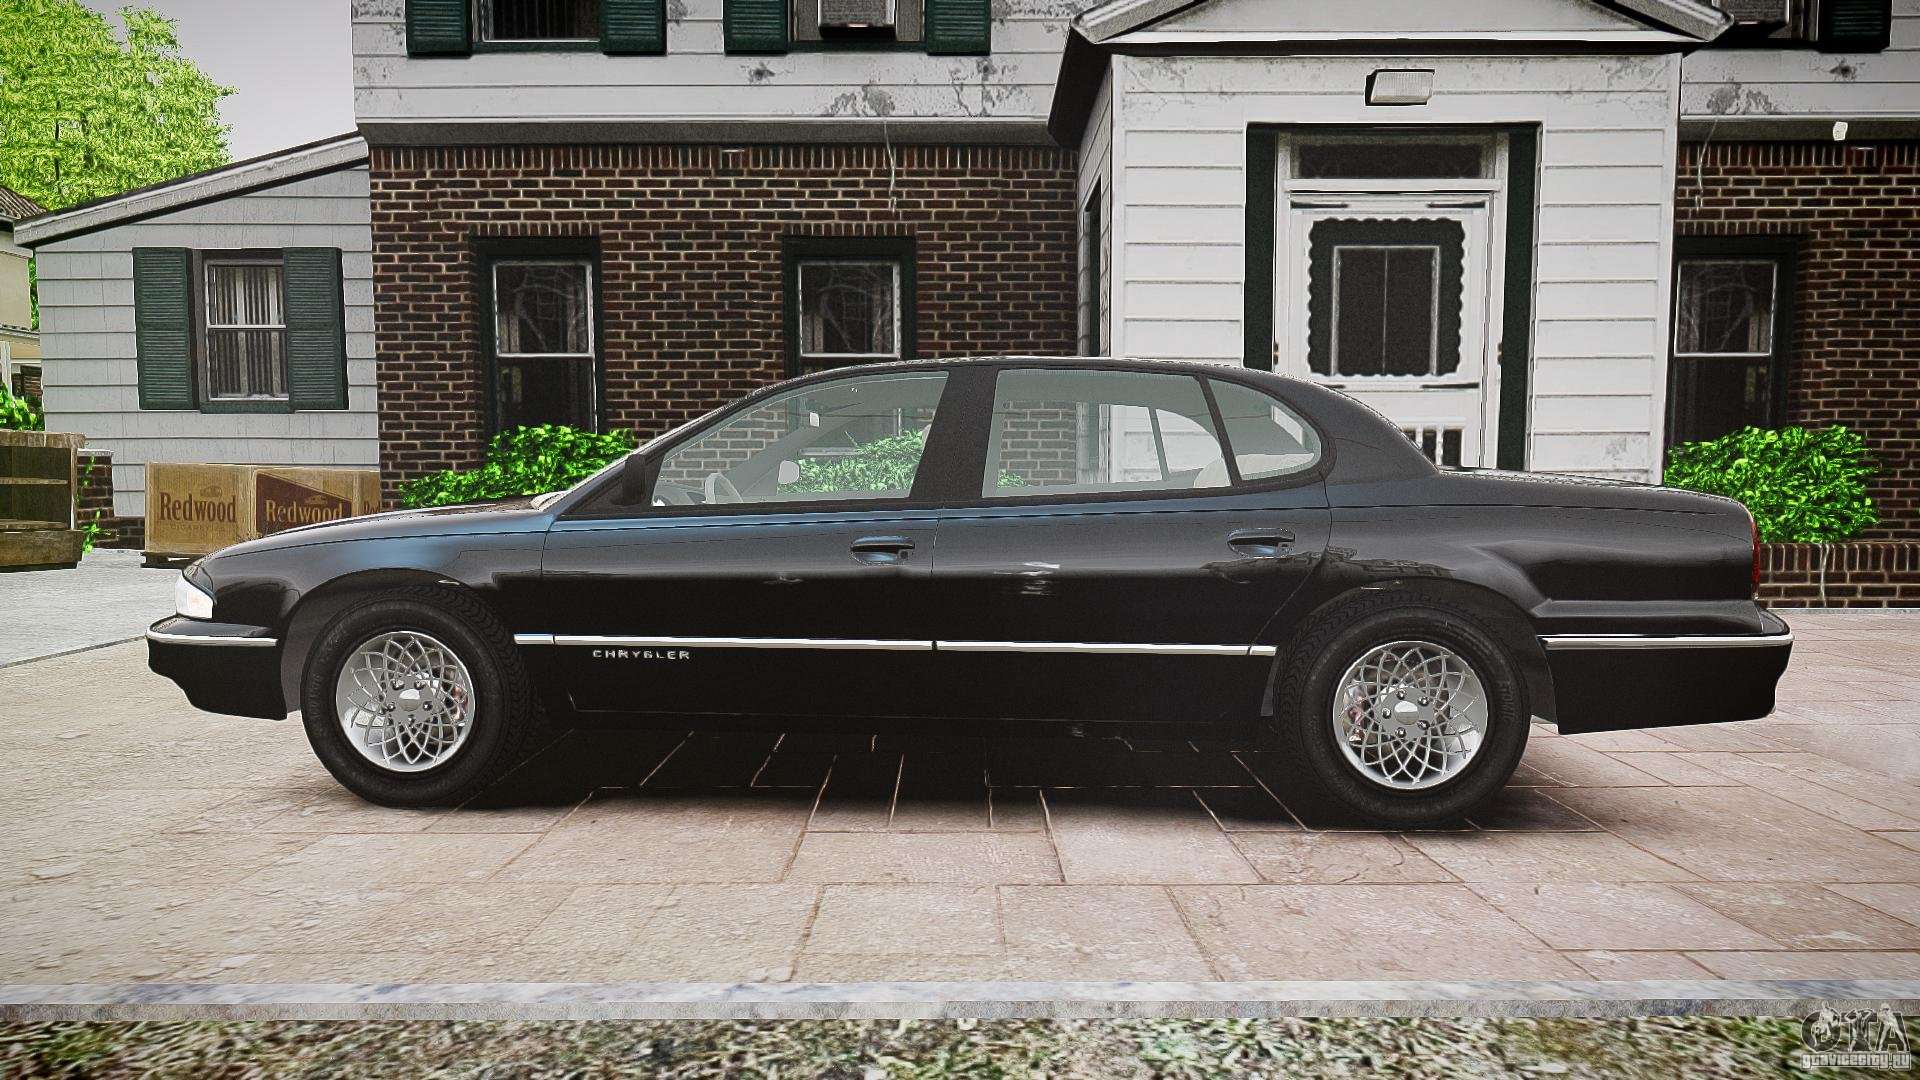 Chrysler New Yorker LHS 1994 for GTA 4